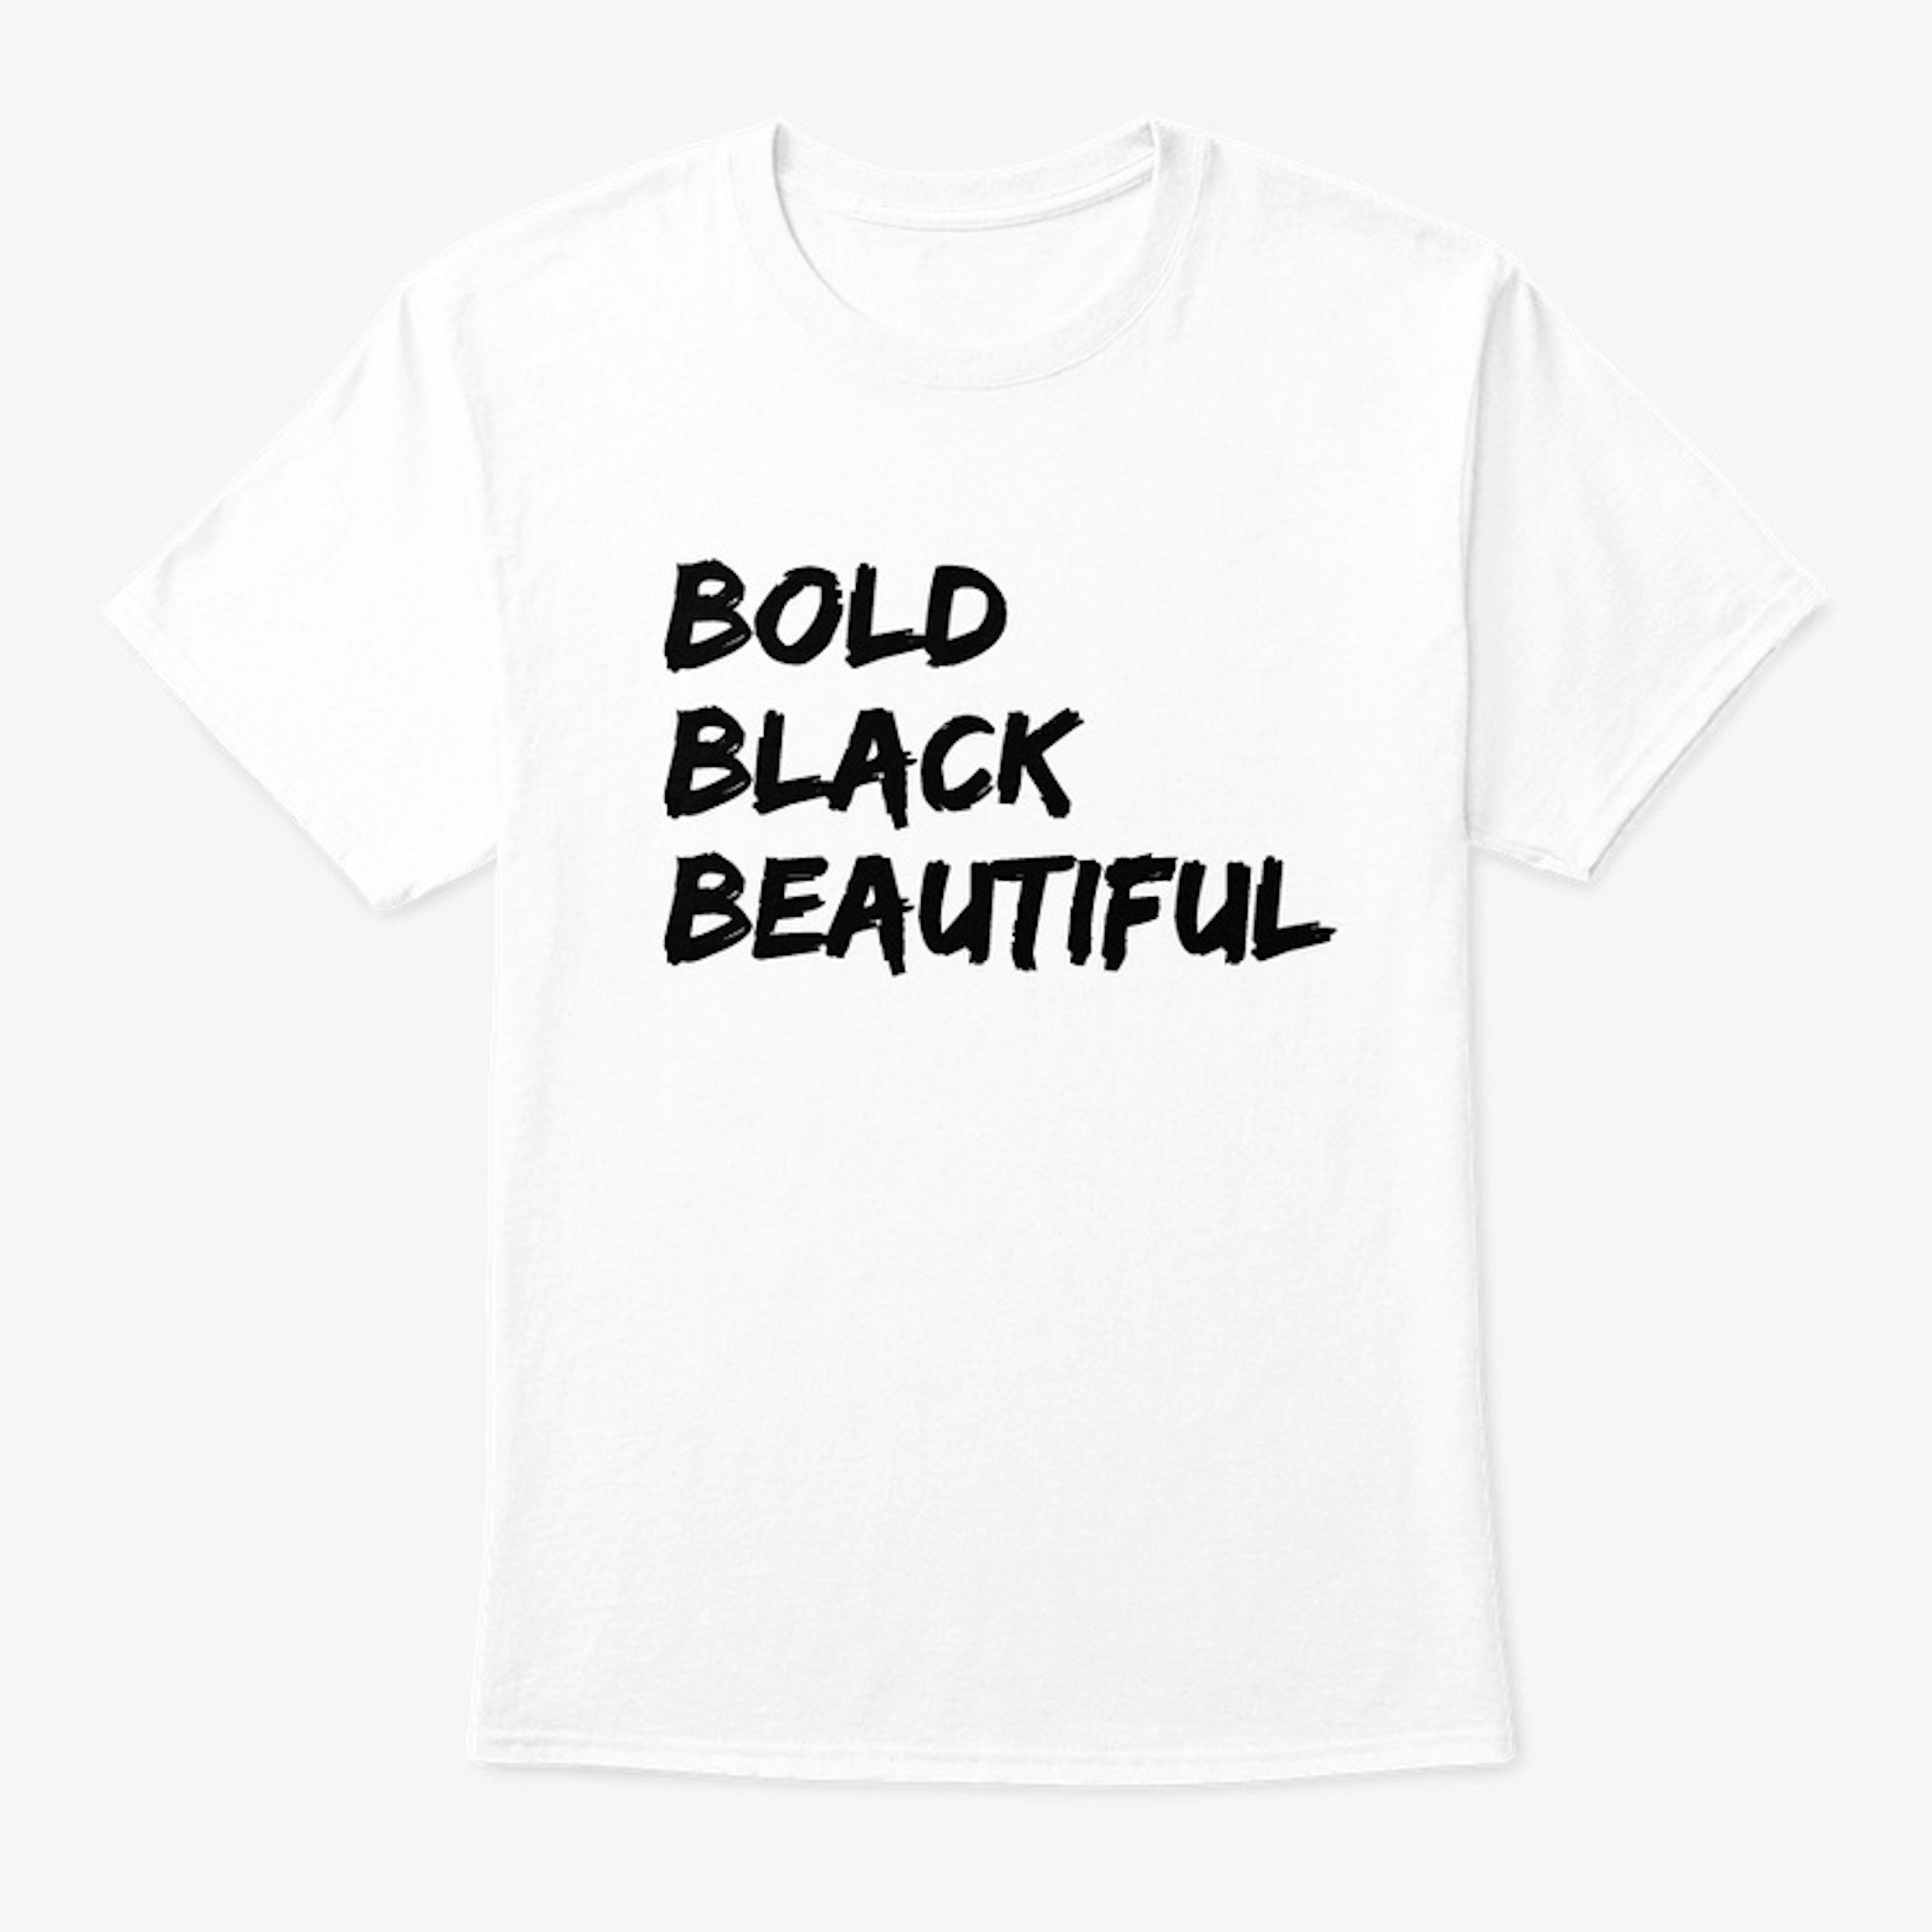 BOLD BLACK BEAUTIFUL